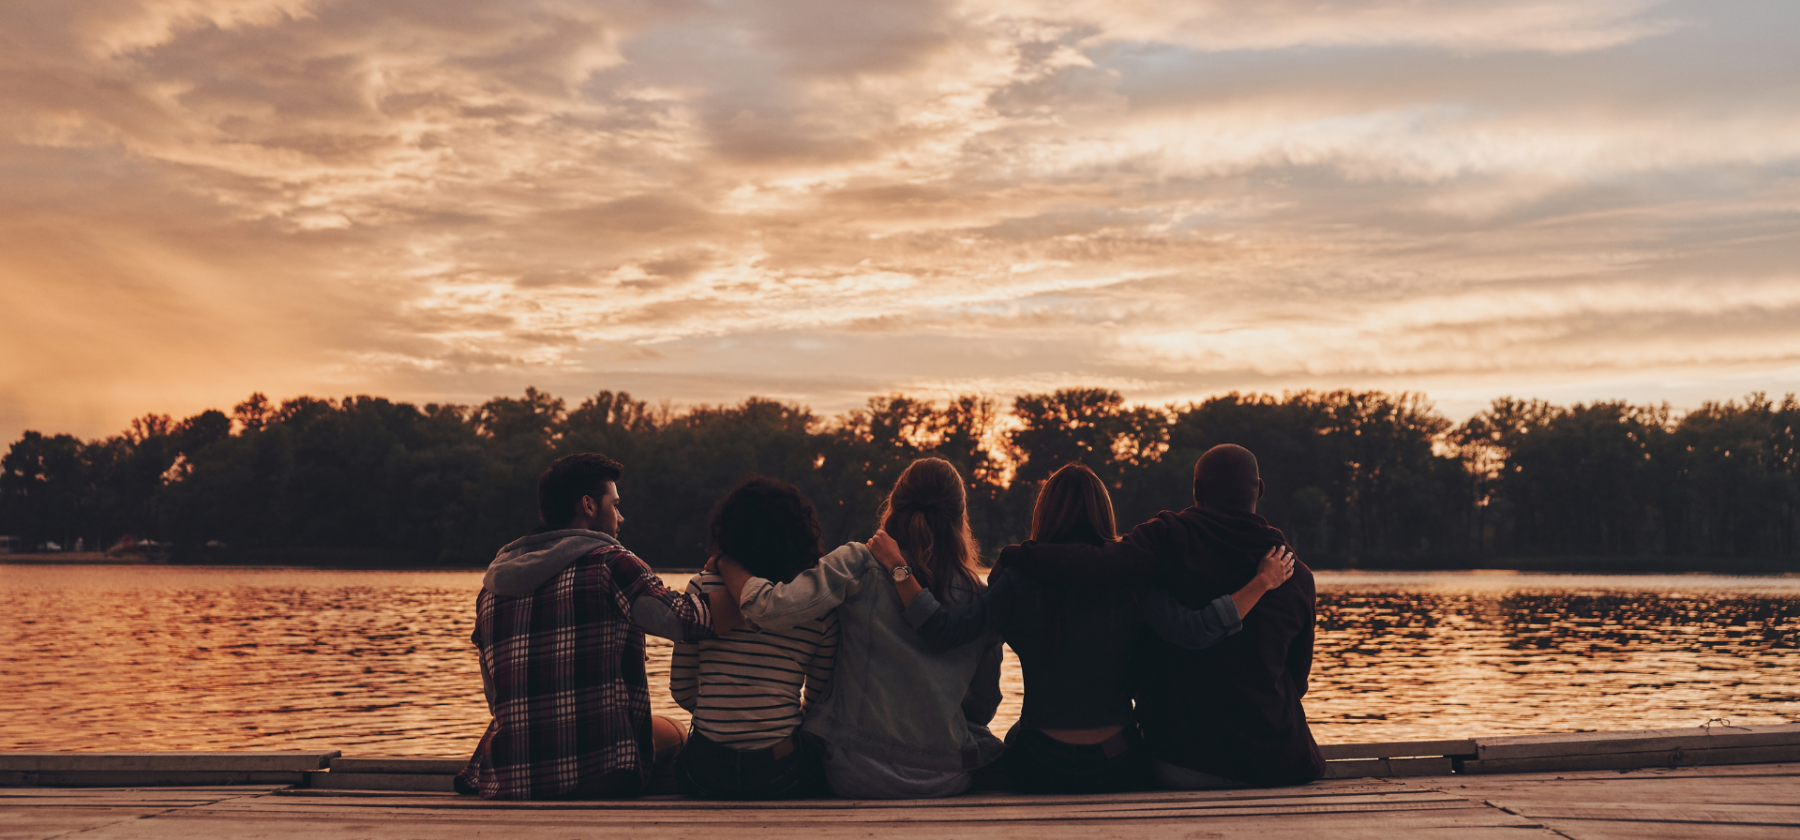 Friends sitting next to lake watching sunset